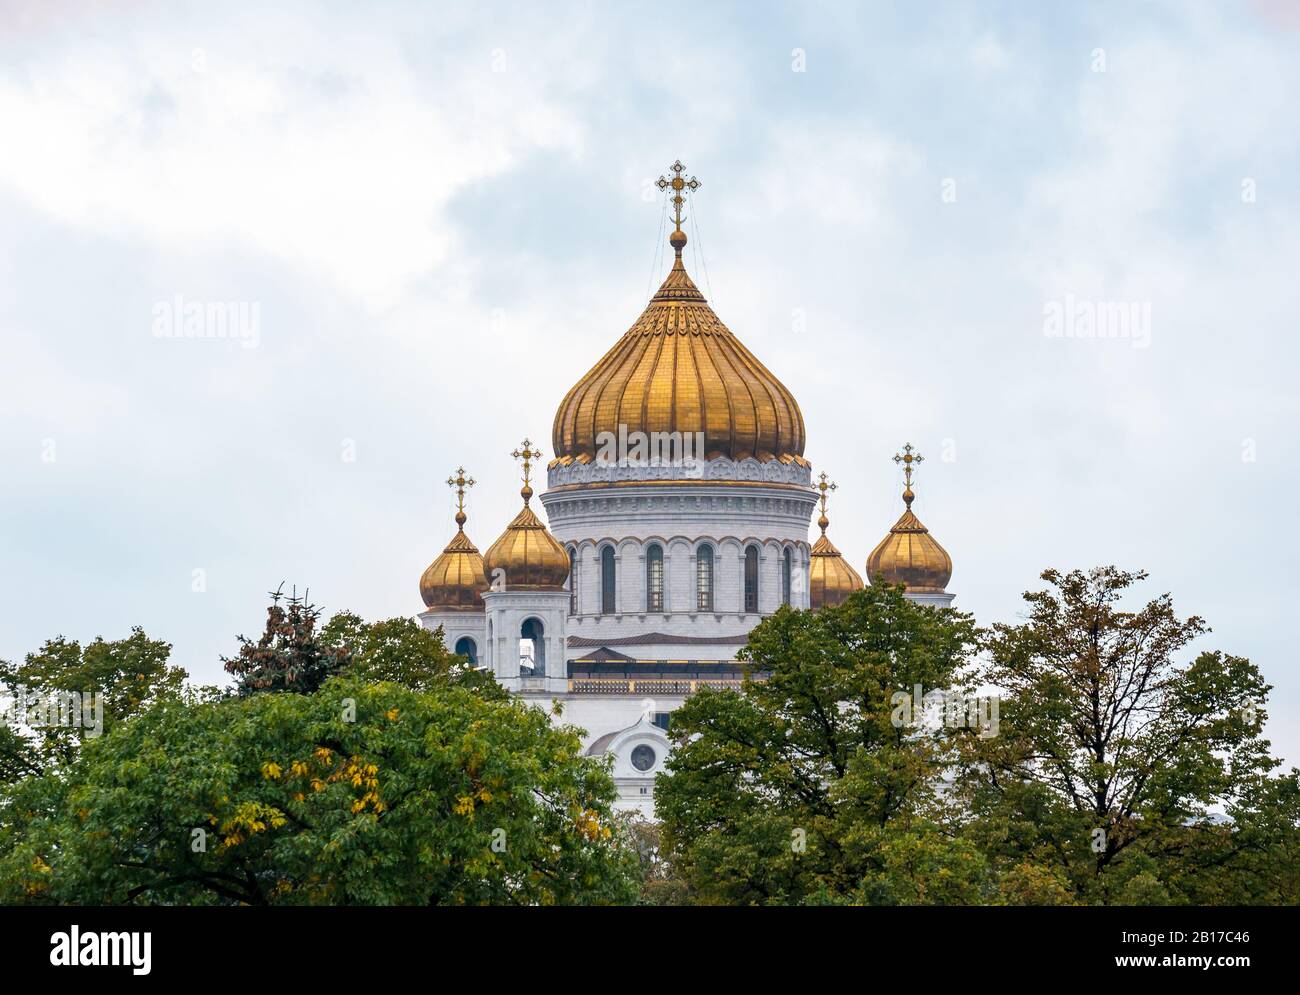 Cathédrale du Christ Sauveur ou cathédrale Saint-Sauveur au-dessus des arbres, Moscou, Fédération de Russie Banque D'Images